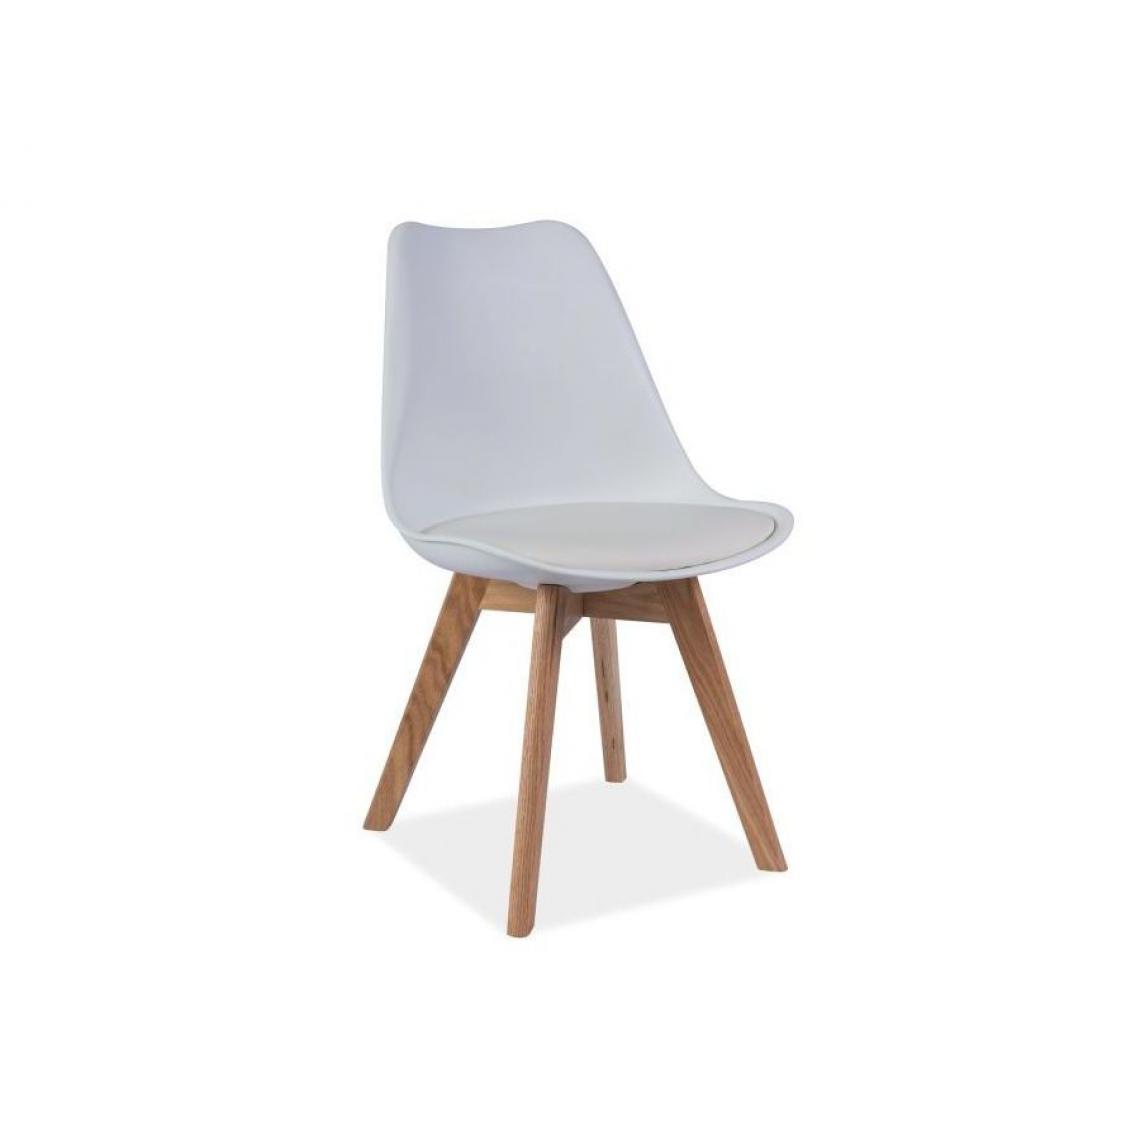 Hucoco - KRIZ | Chaise style scandinave salle à manger/salon/bureau | Dimensions : 83x49x43cm | Assise en cuir écologique | Base en bois - Blanc - Chaises